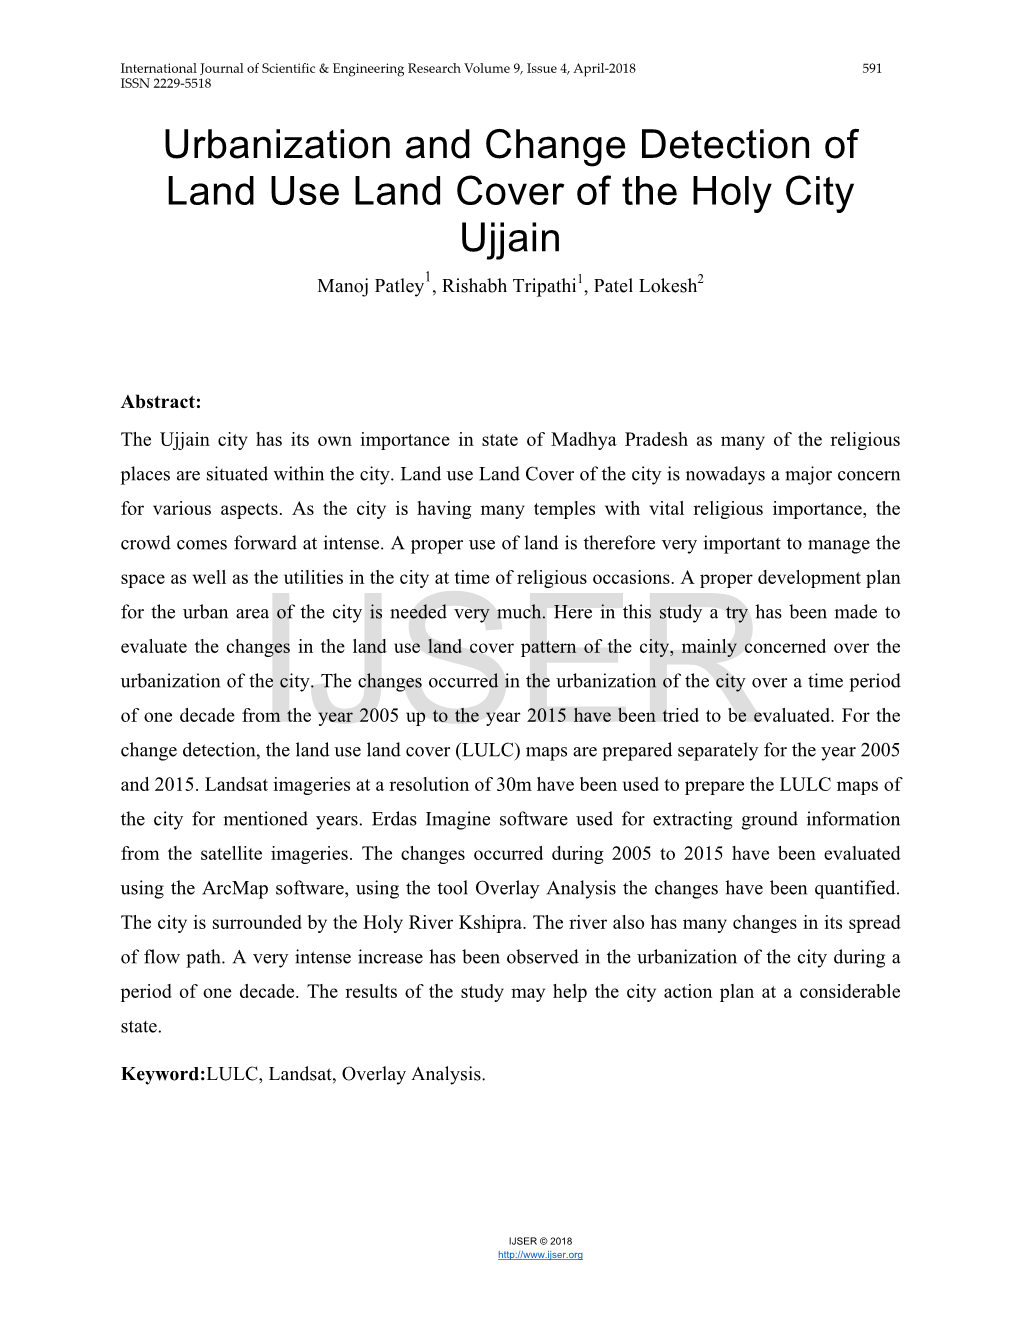 Urbanization and Change Detection of Land Use Land Cover of the Holy City Ujjain Manoj Patley1, Rishabh Tripathi1, Patel Lokesh2